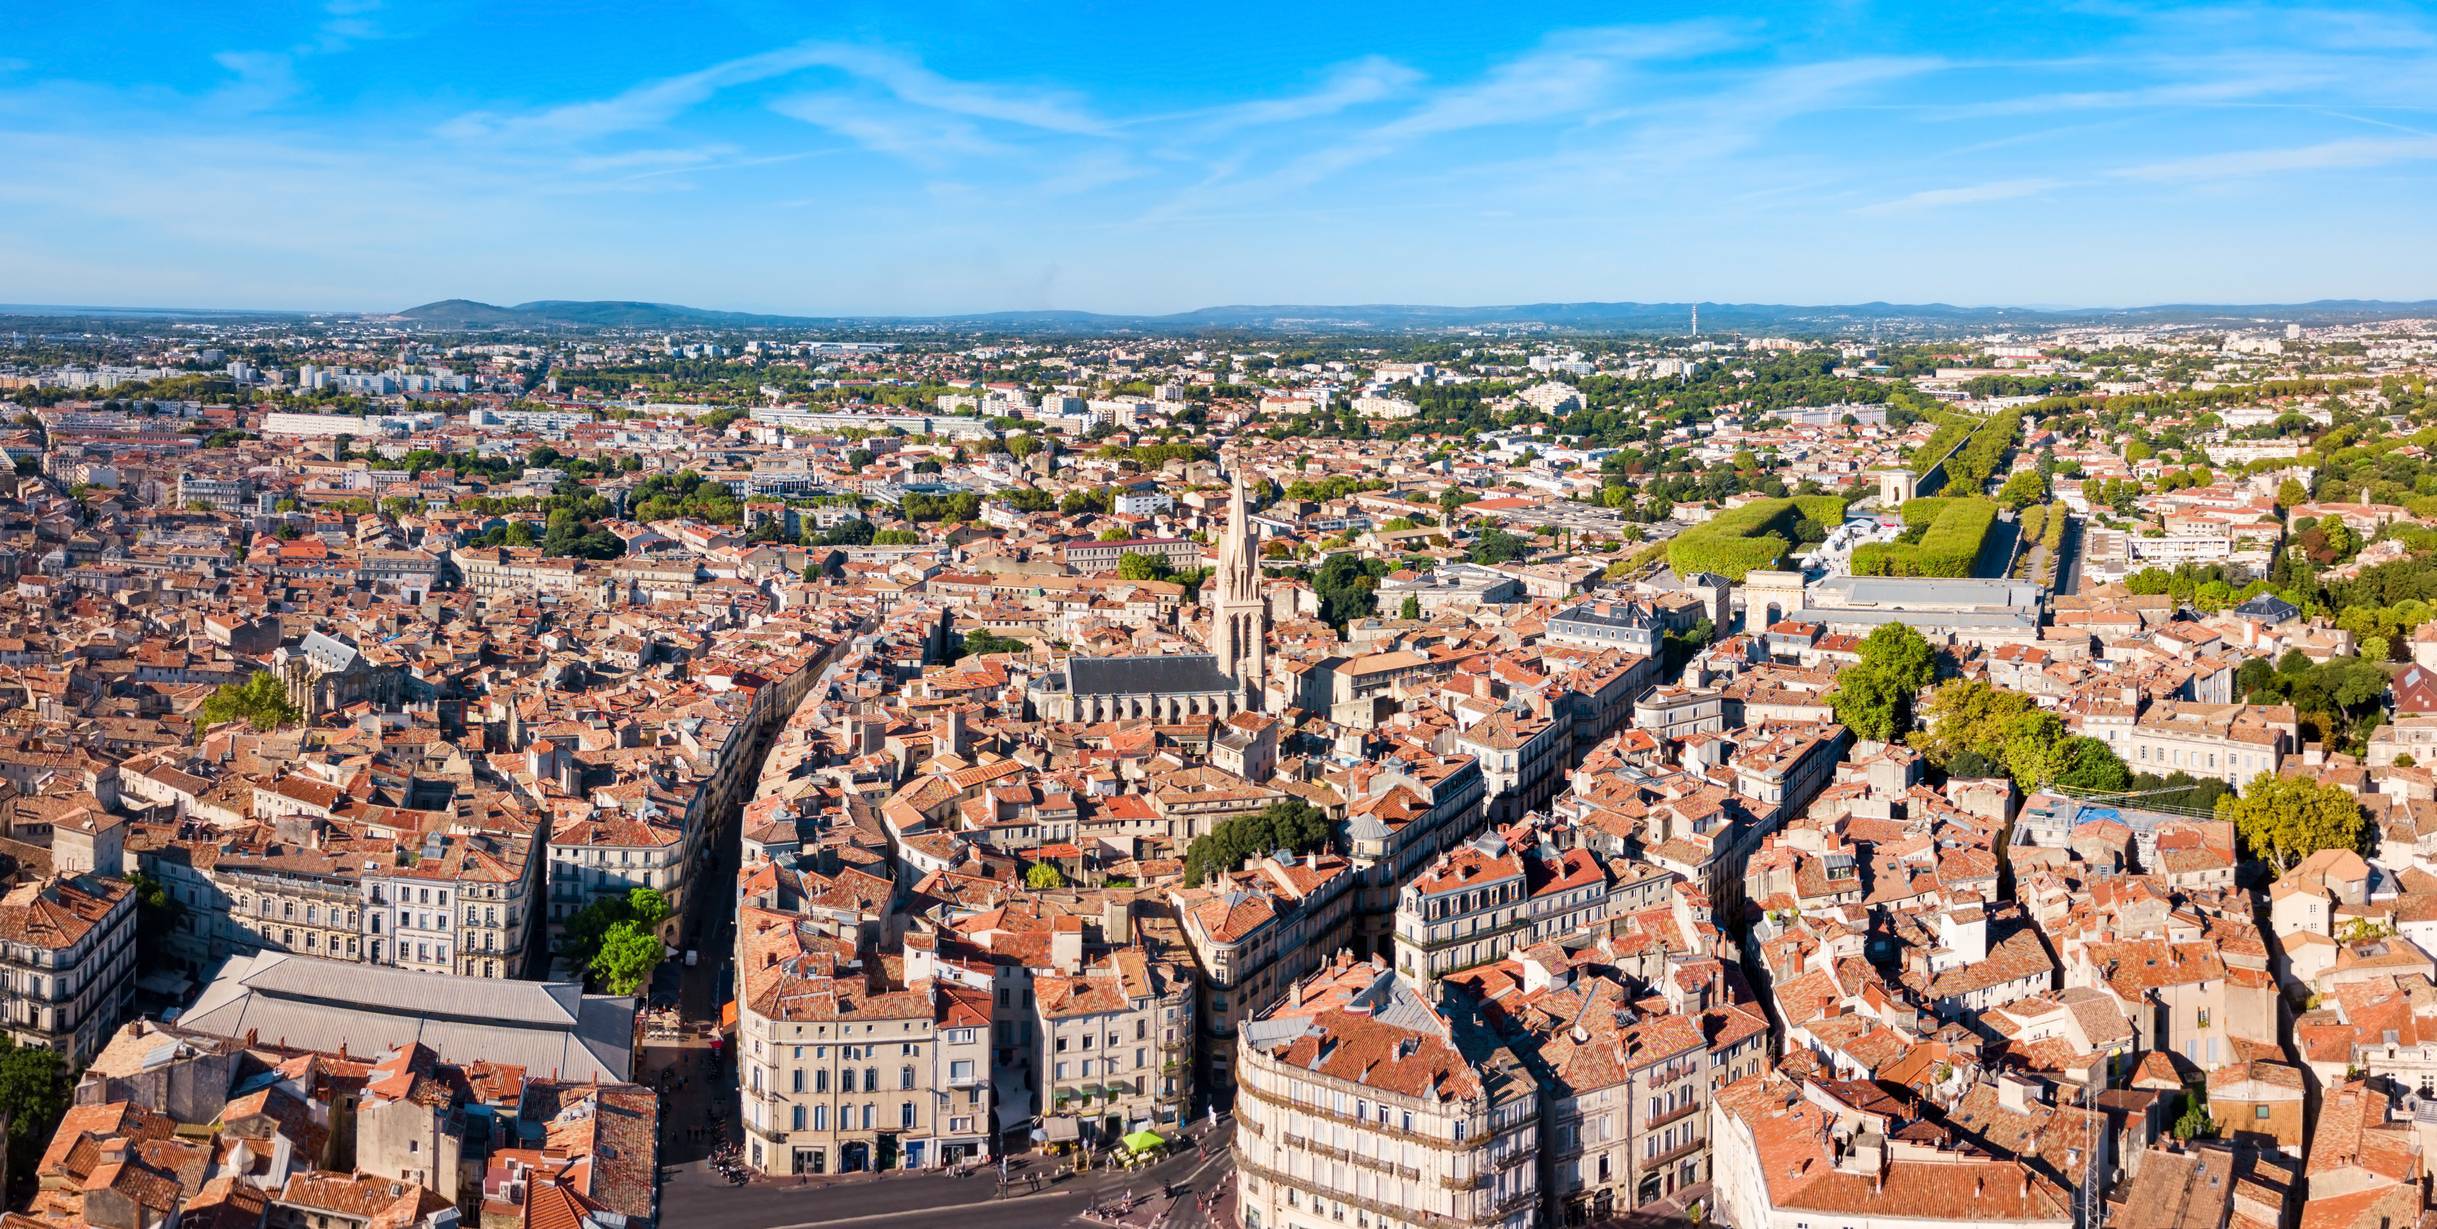 comment investir dans l'immobilier à Montpellier